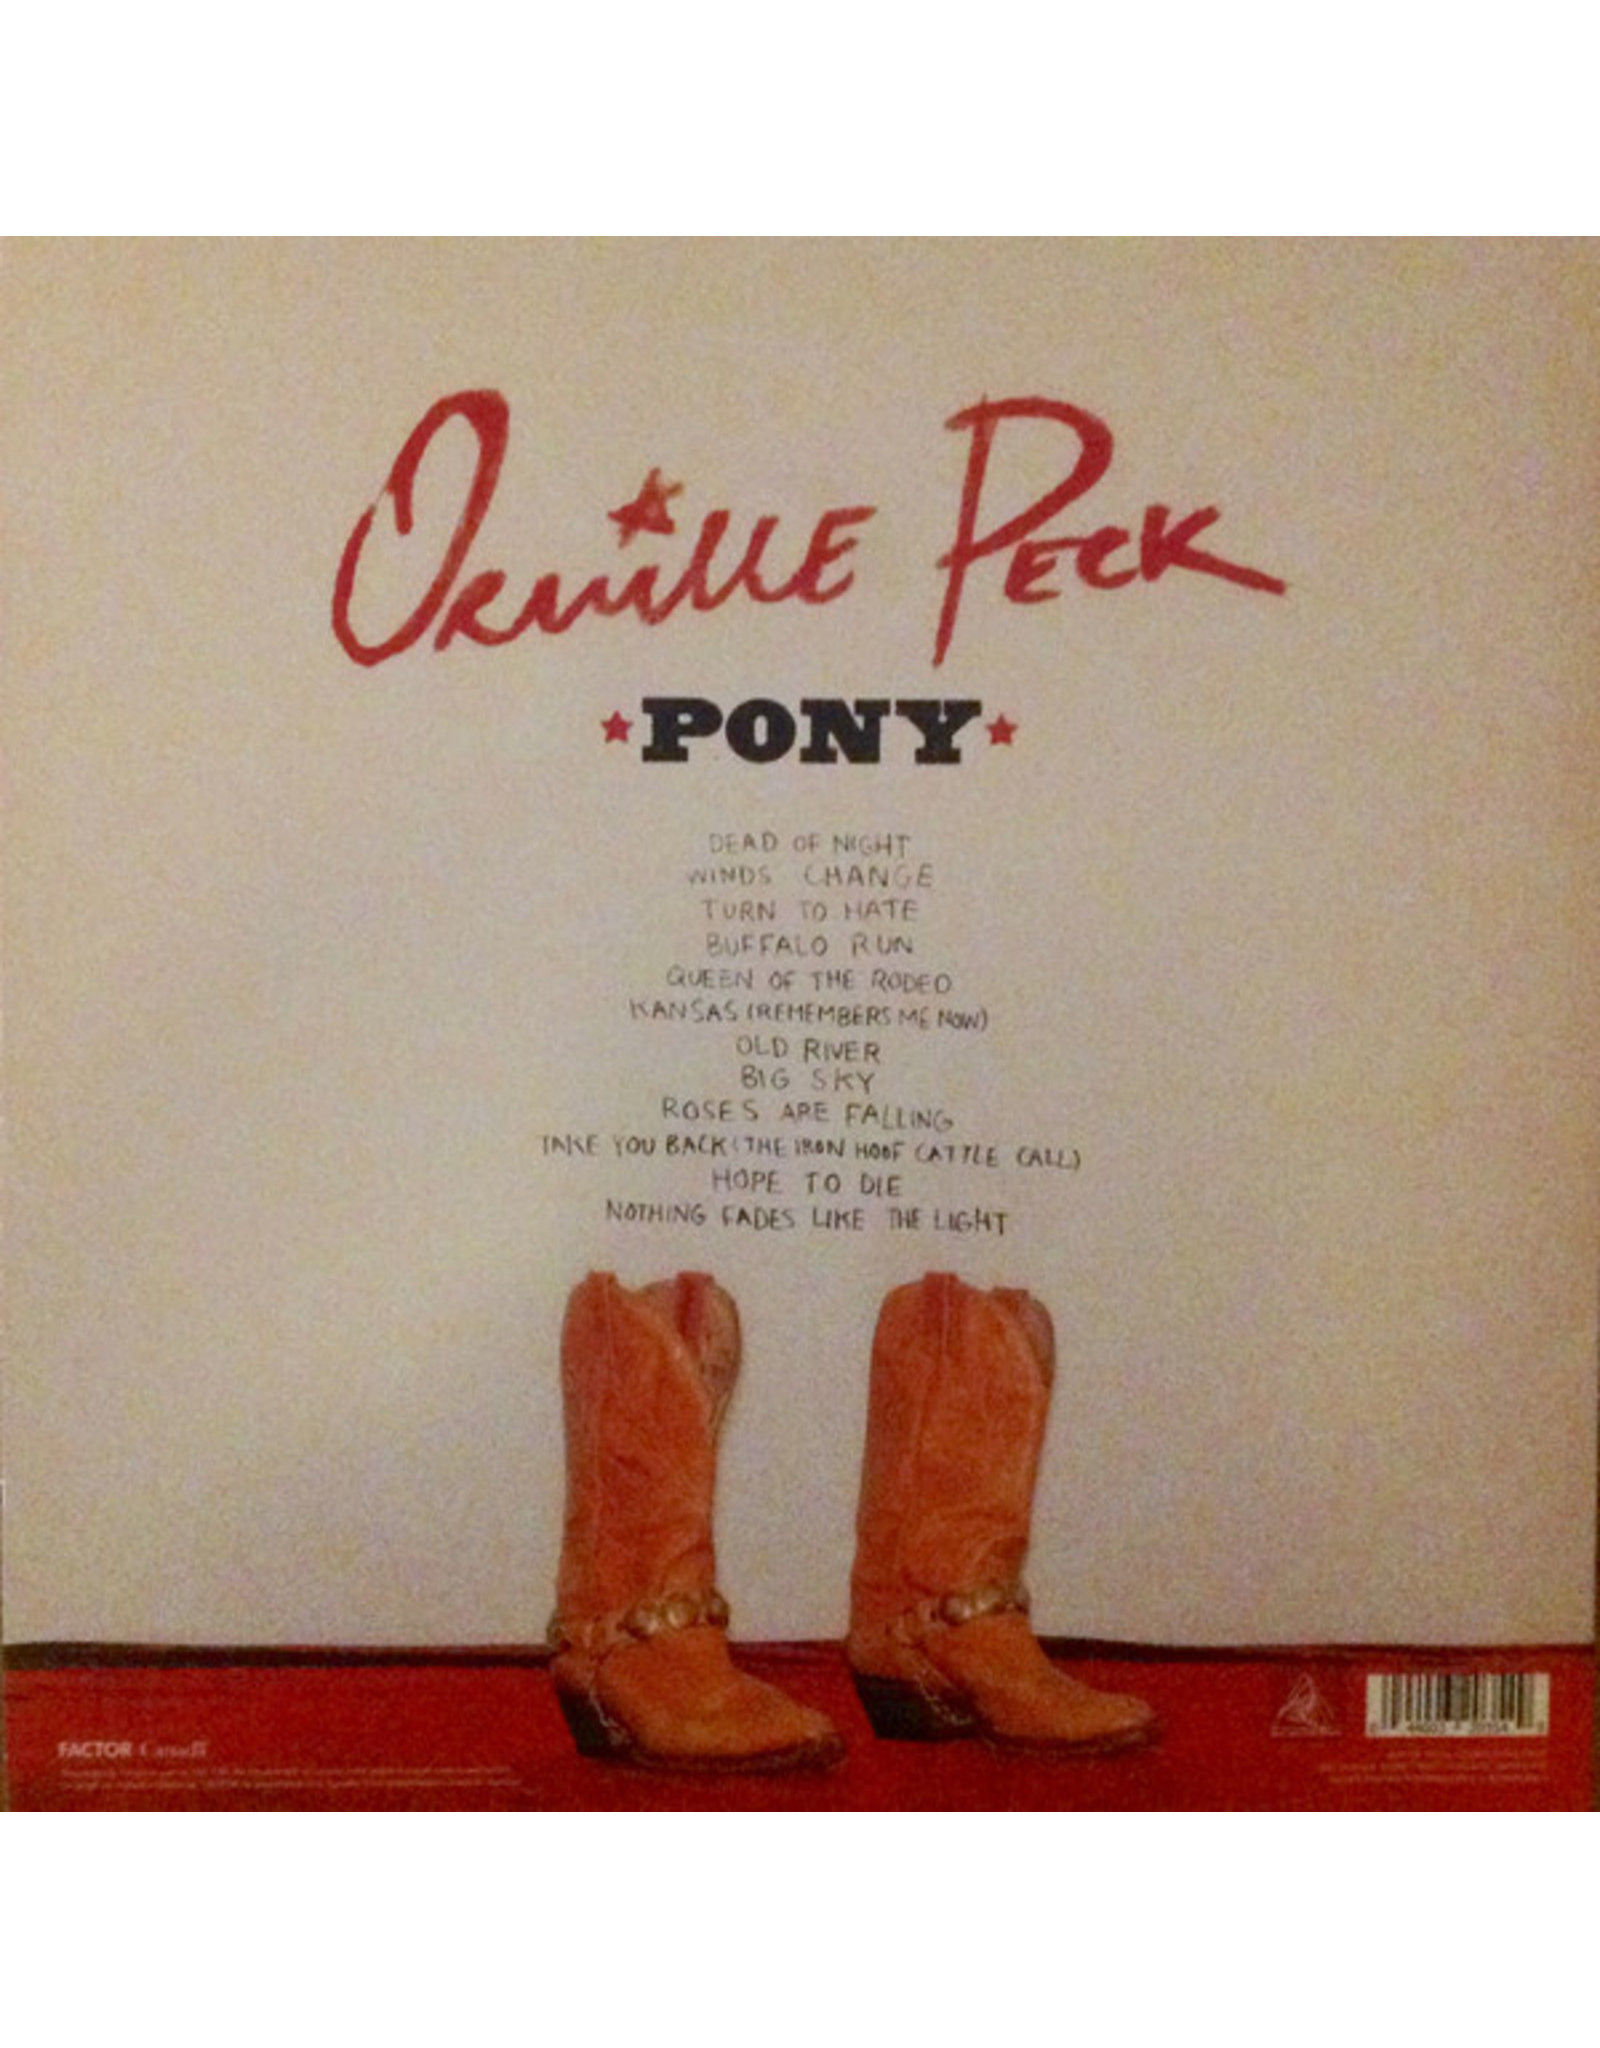 Orville Peck - Pony